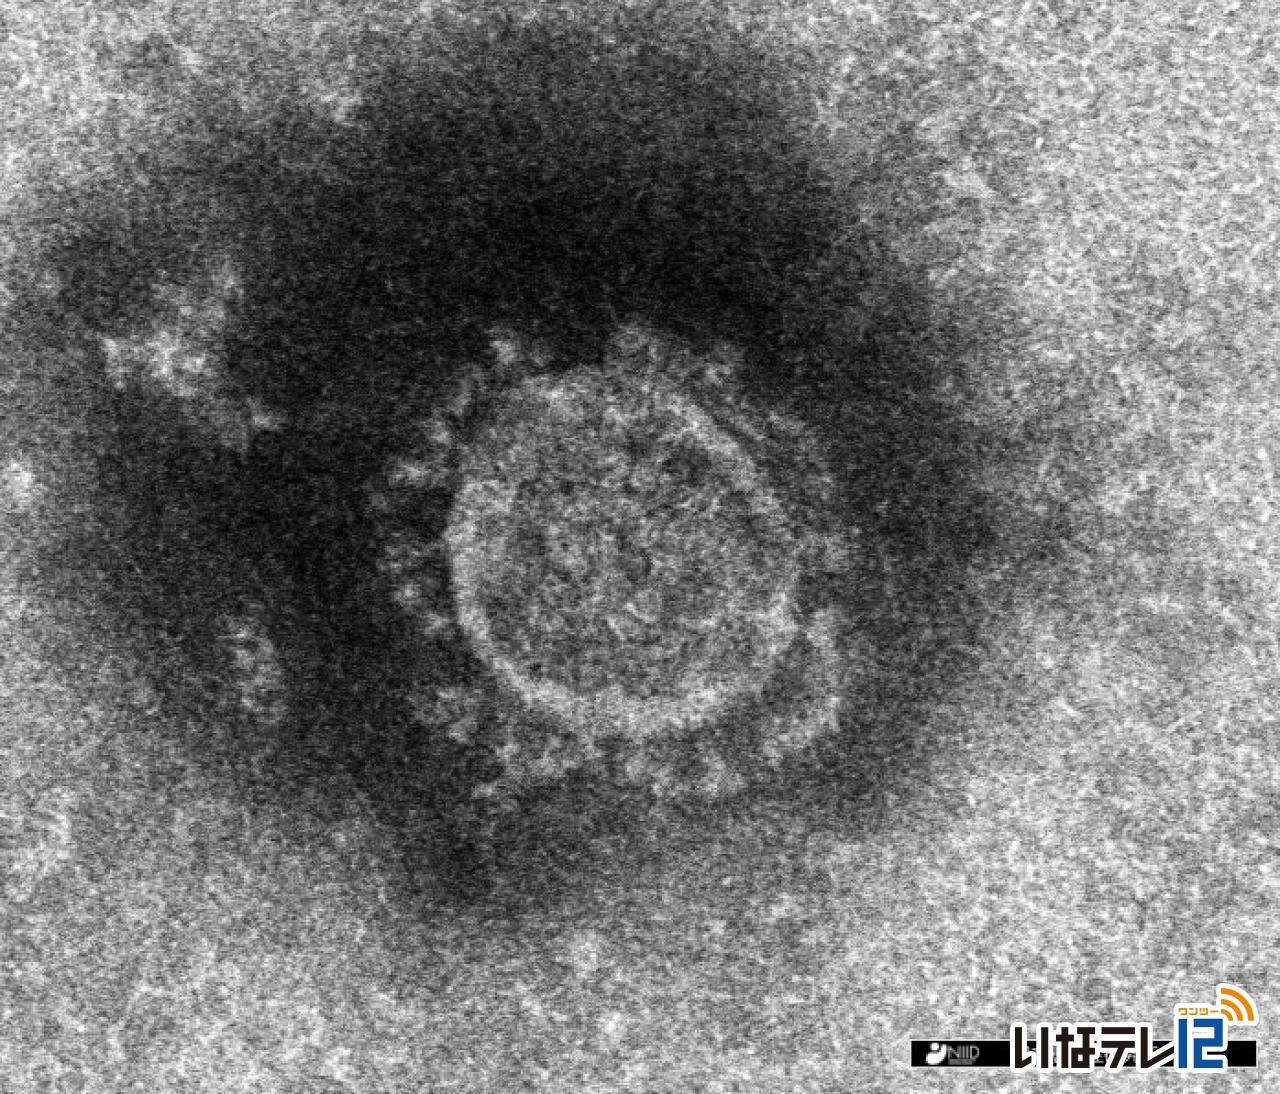 長野県内で上伊那地域の５５人を含む６９９人　新型コロナウイルス感染確認